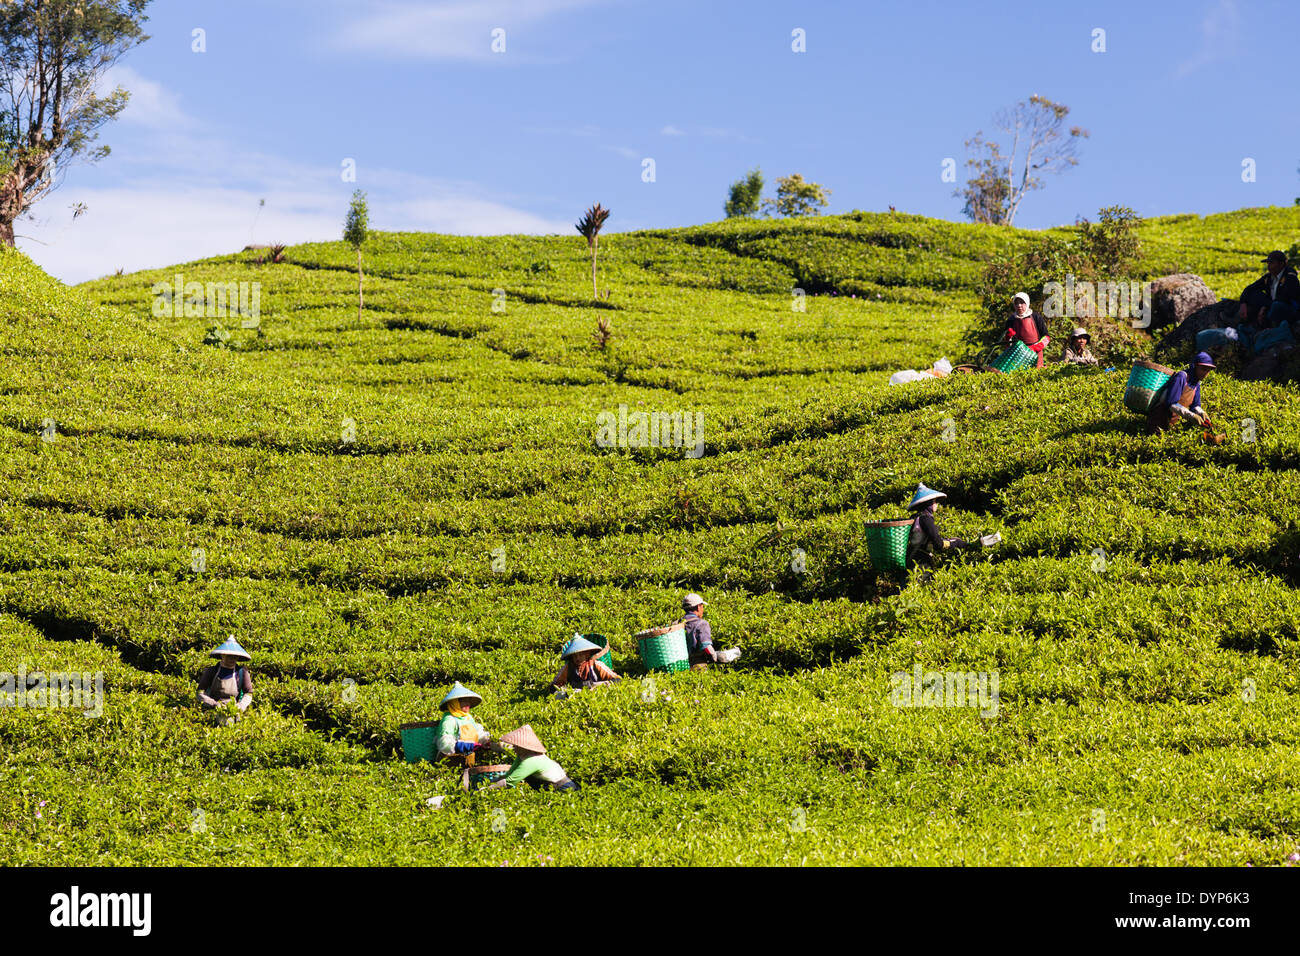 People harvesting tea (Camellia sinensis) on tea plantation near Ciwidey, West Java, Indonesia Stock Photo